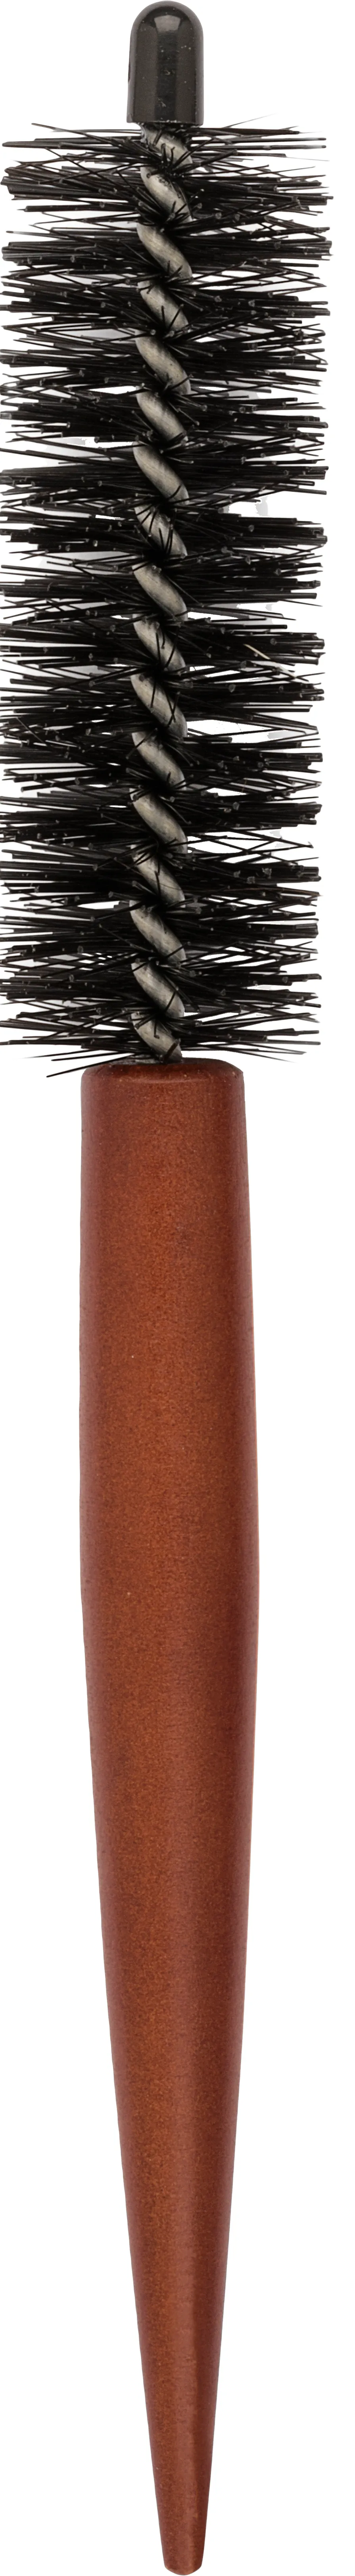 Intervion drewniana szczotka do modelowania włosów ze szpikulcem, 30 mm, 1 szt.